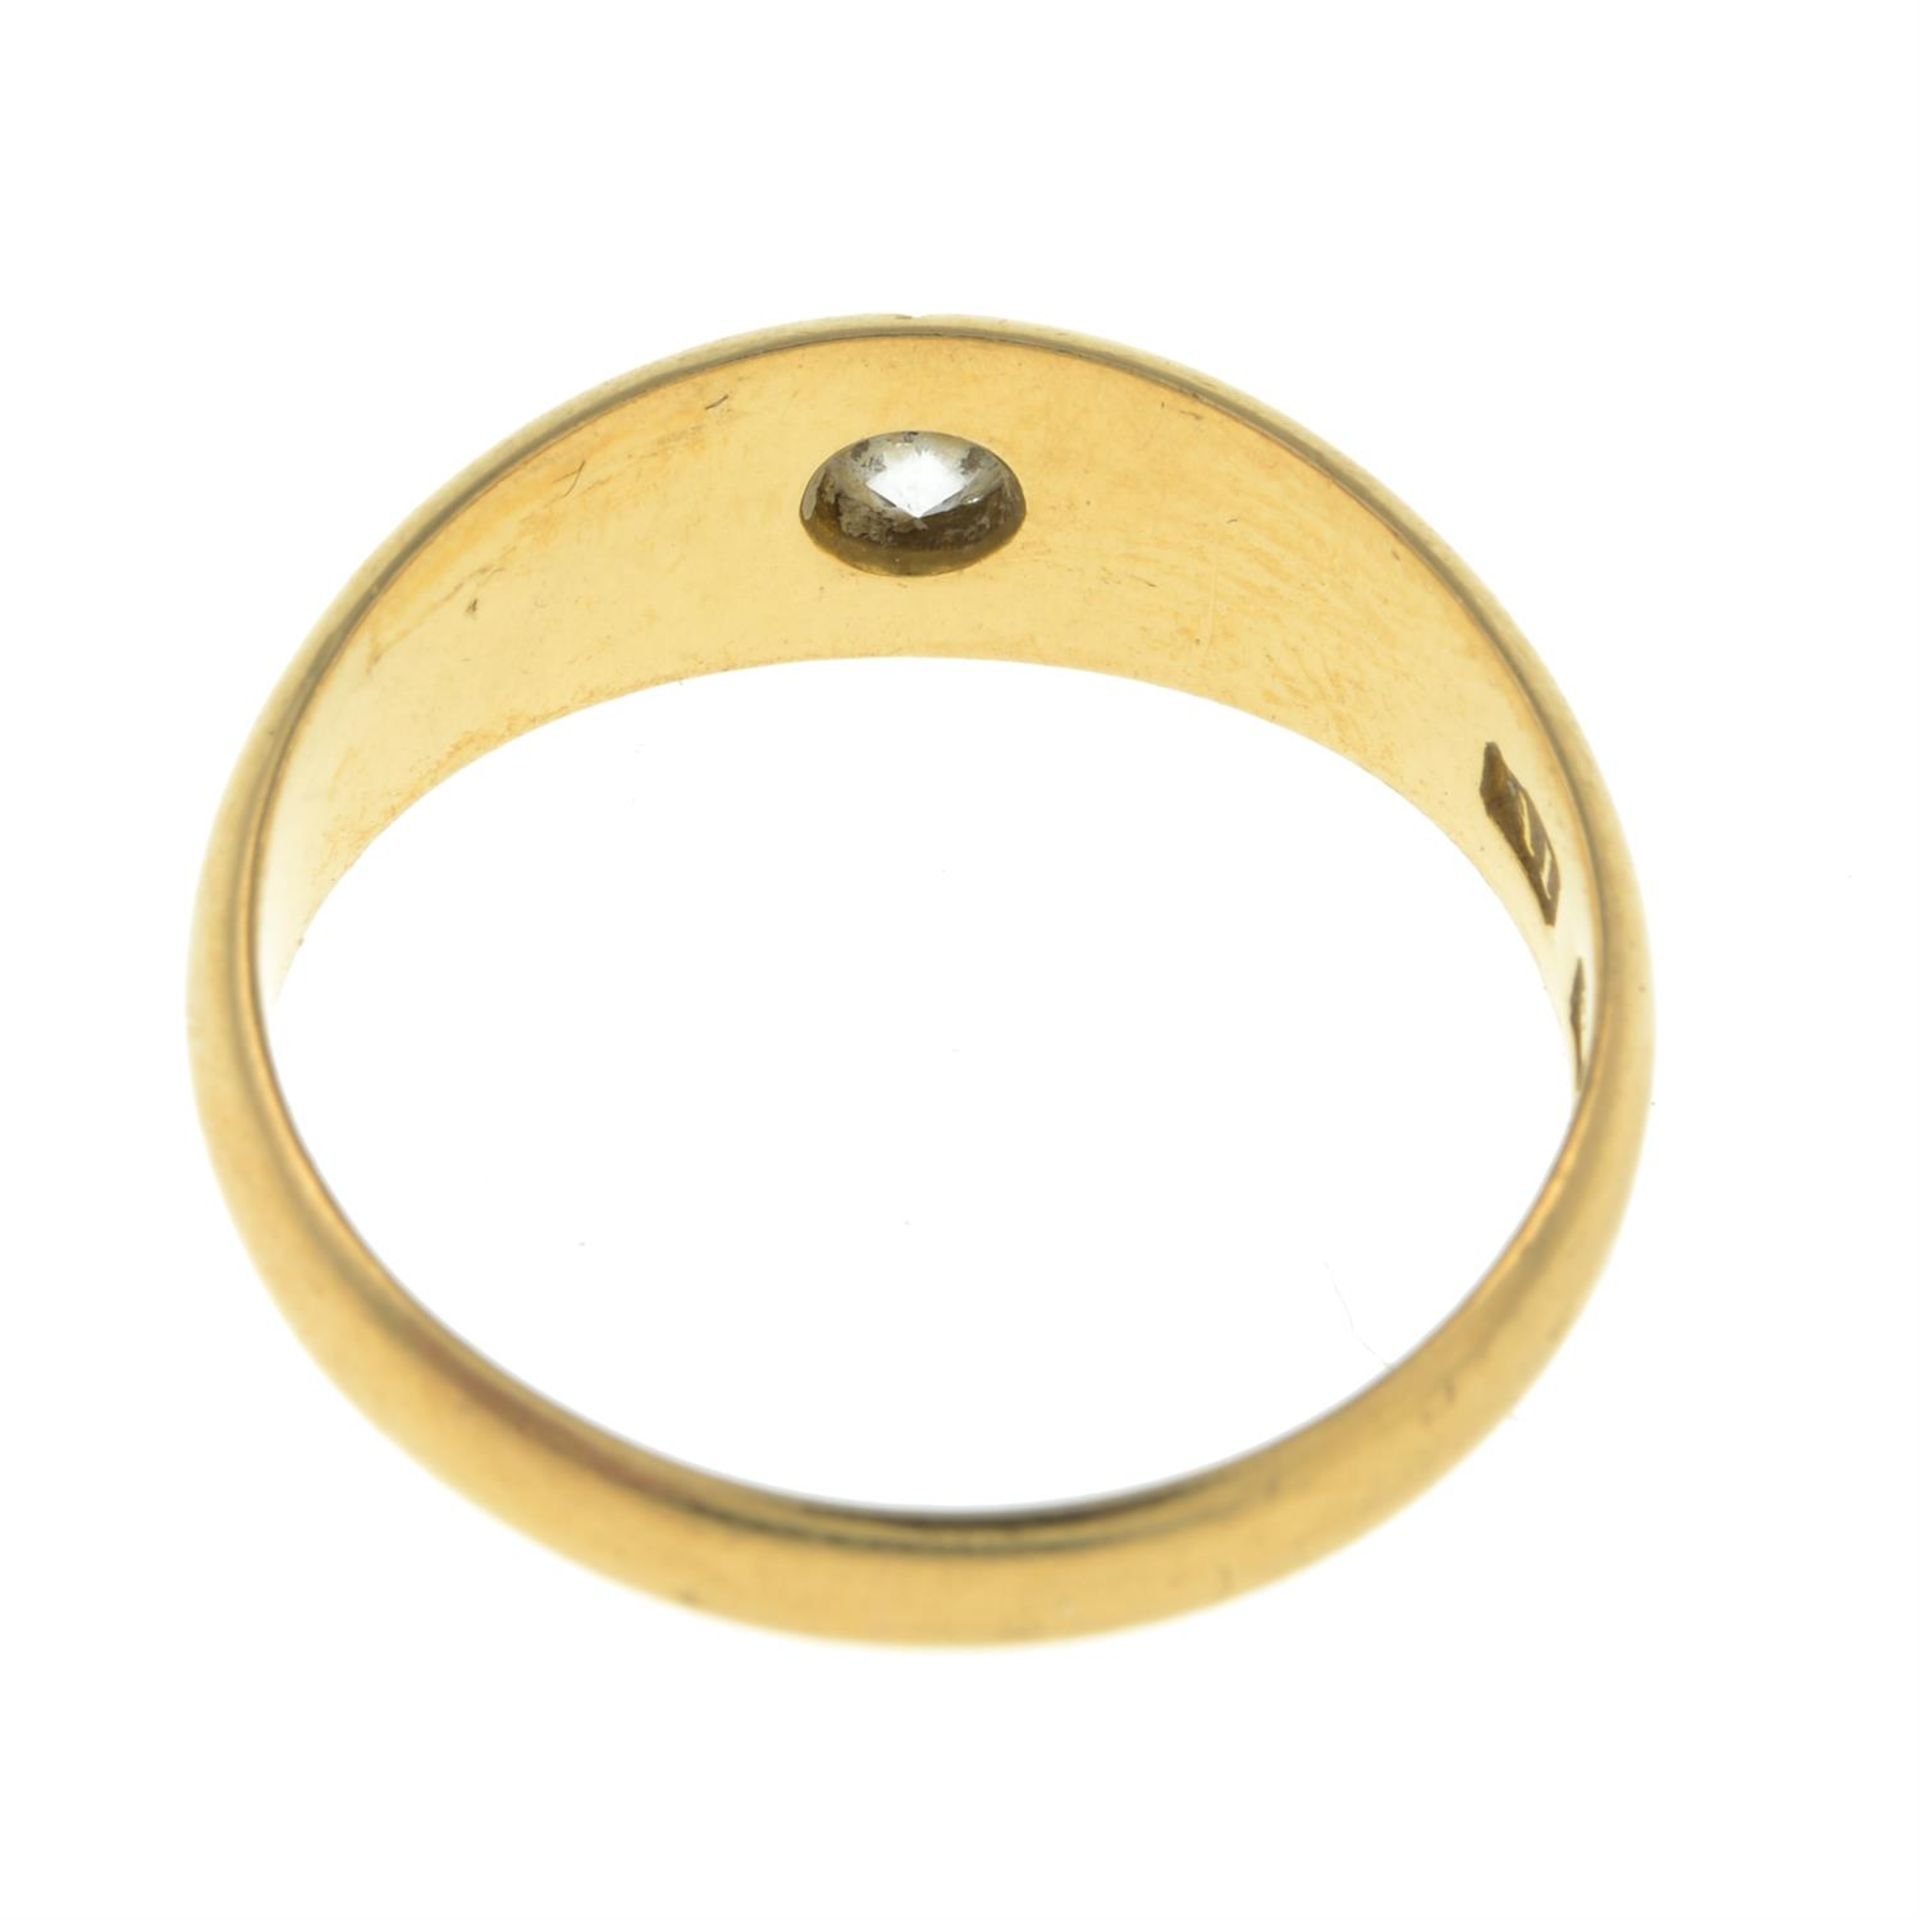 Edwardian 18ct gold diamond single-stone ring - Image 2 of 2